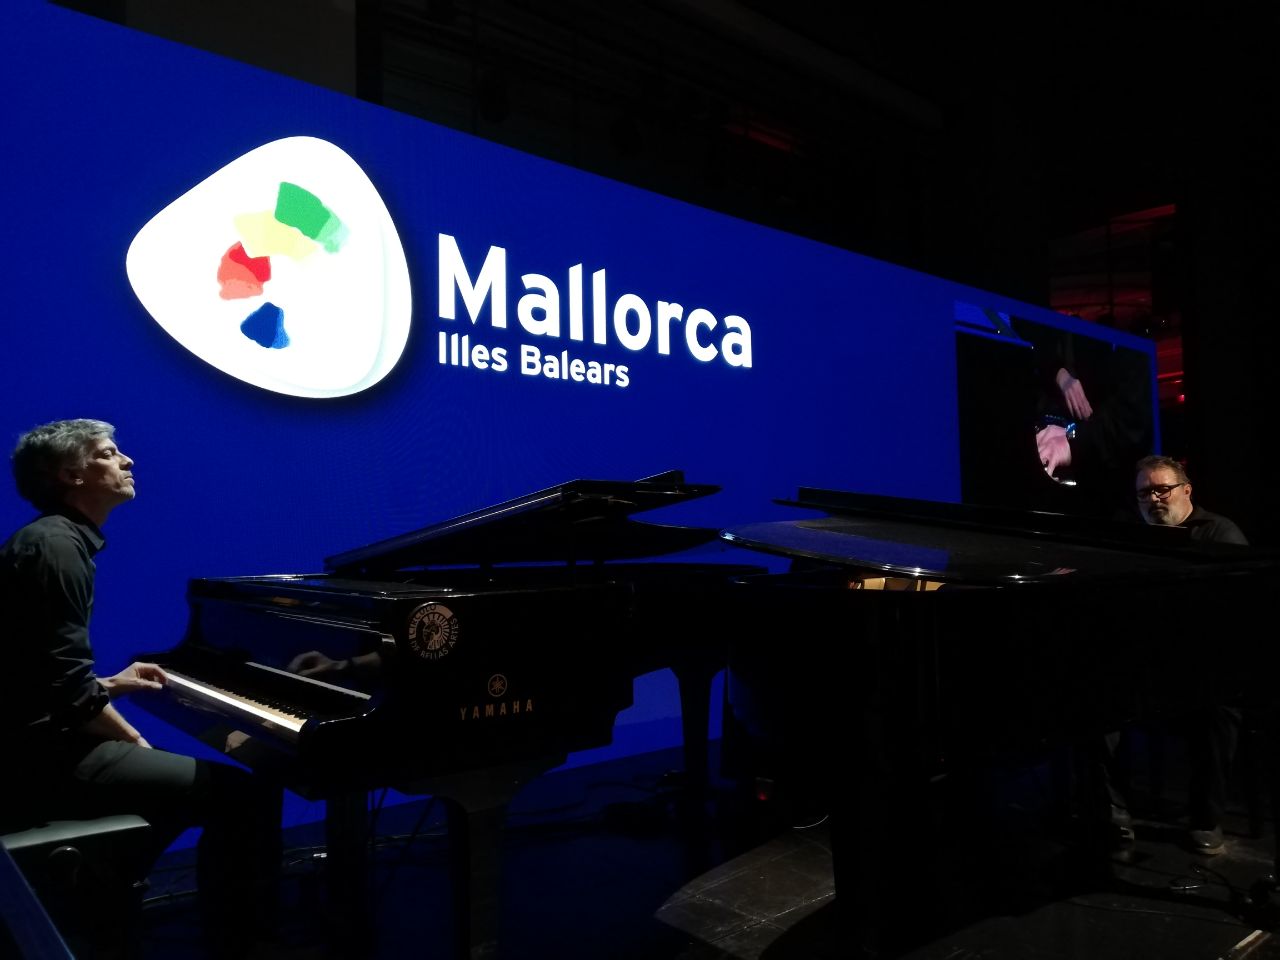 El mallorquín Joan Valent, acompañado al piano por Joan Martorell, han interpretado también la pieza compuesta por ellos mismos, «El Pla», mientras los asistentes han podido visionar un video con imagenes de esta zona de Mallorca.